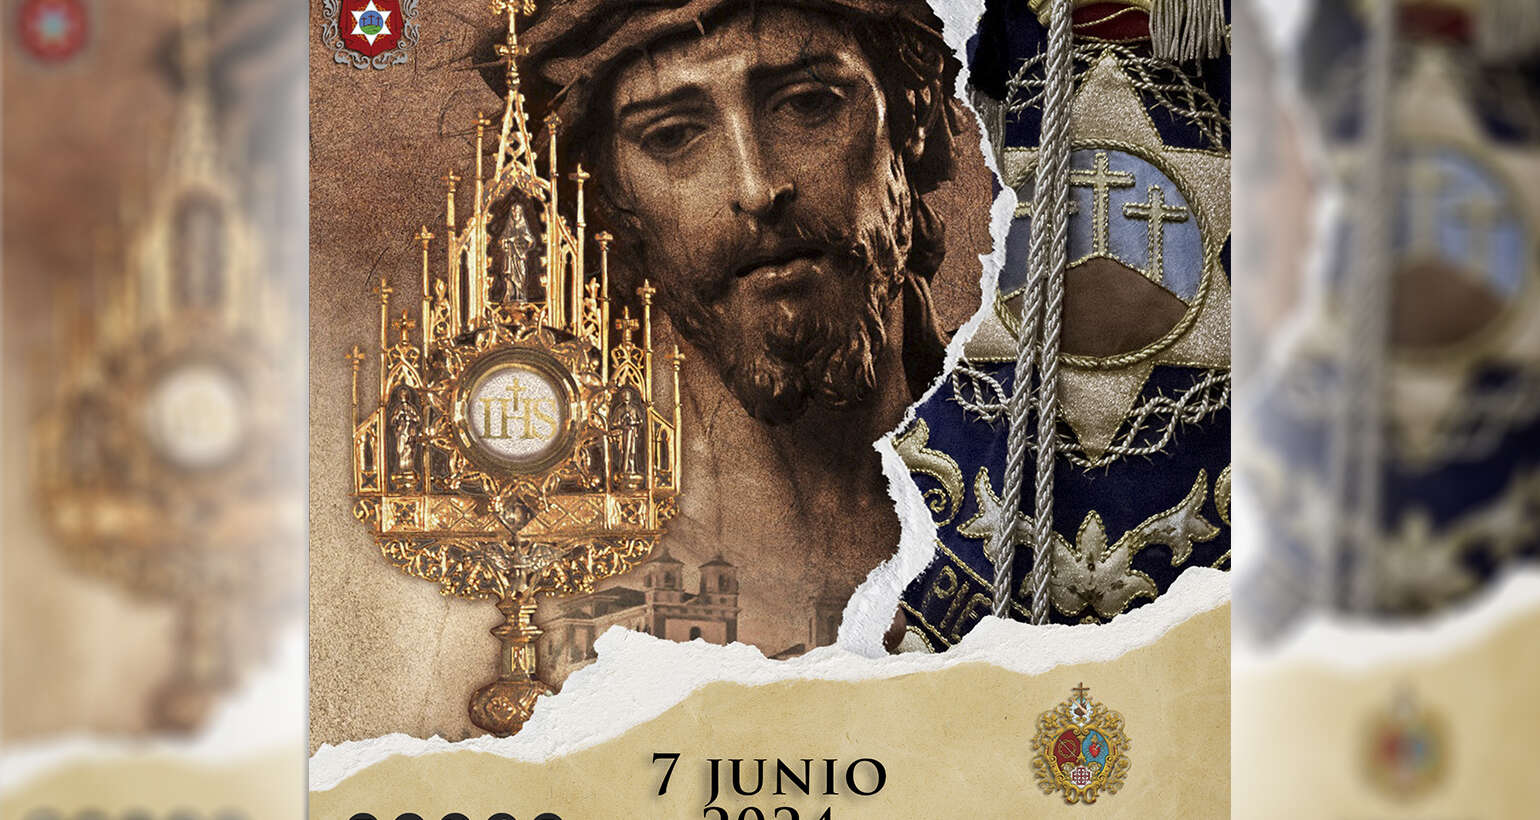 El 7 de junio participaremos en la Procesión de la Infraoctava del Corpus Christi de Martos